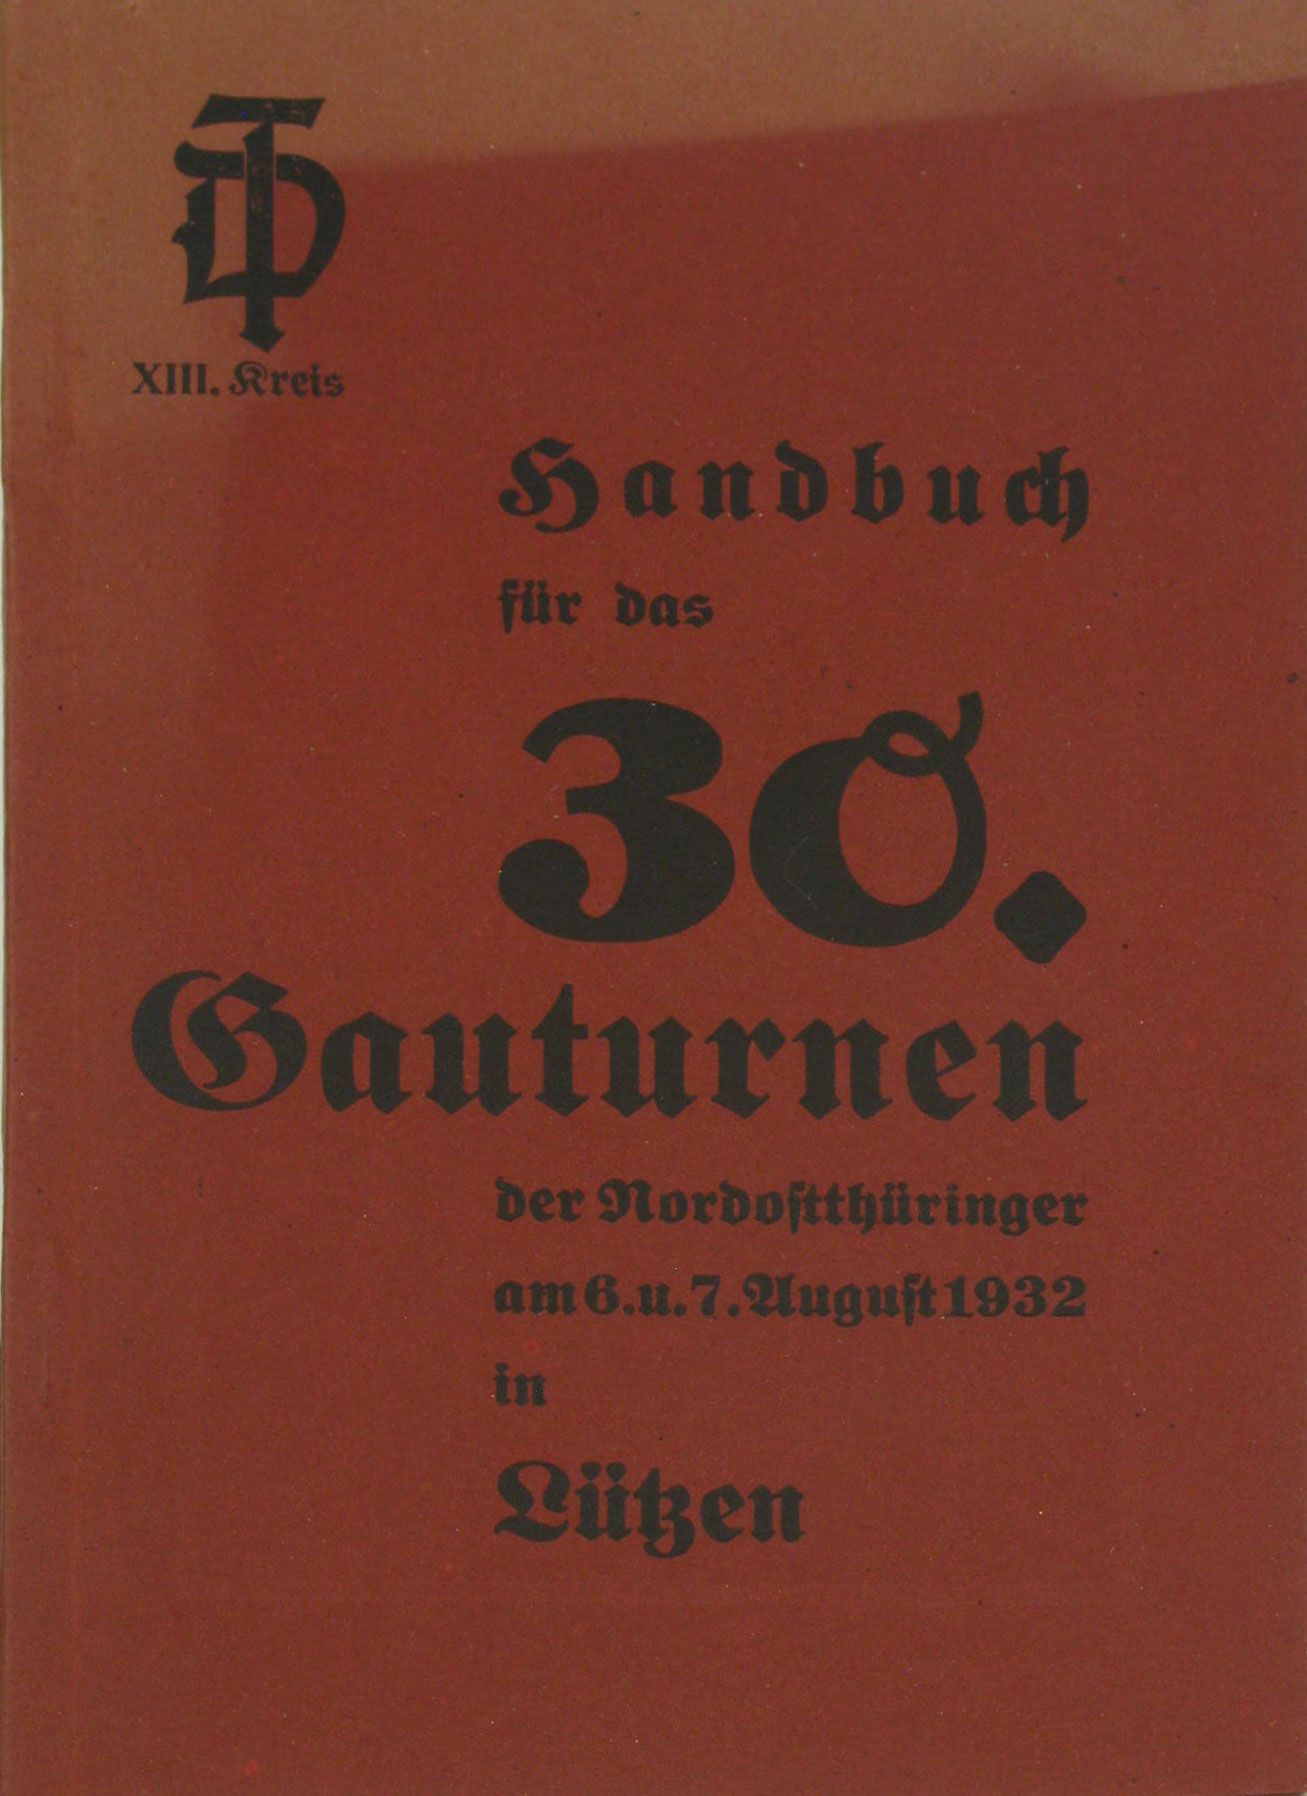 Autorenkollektiv:  Handbuch für das 30. Gauturnen der Nordostthüringer am 6 und 7. August 1932 in Lützen 